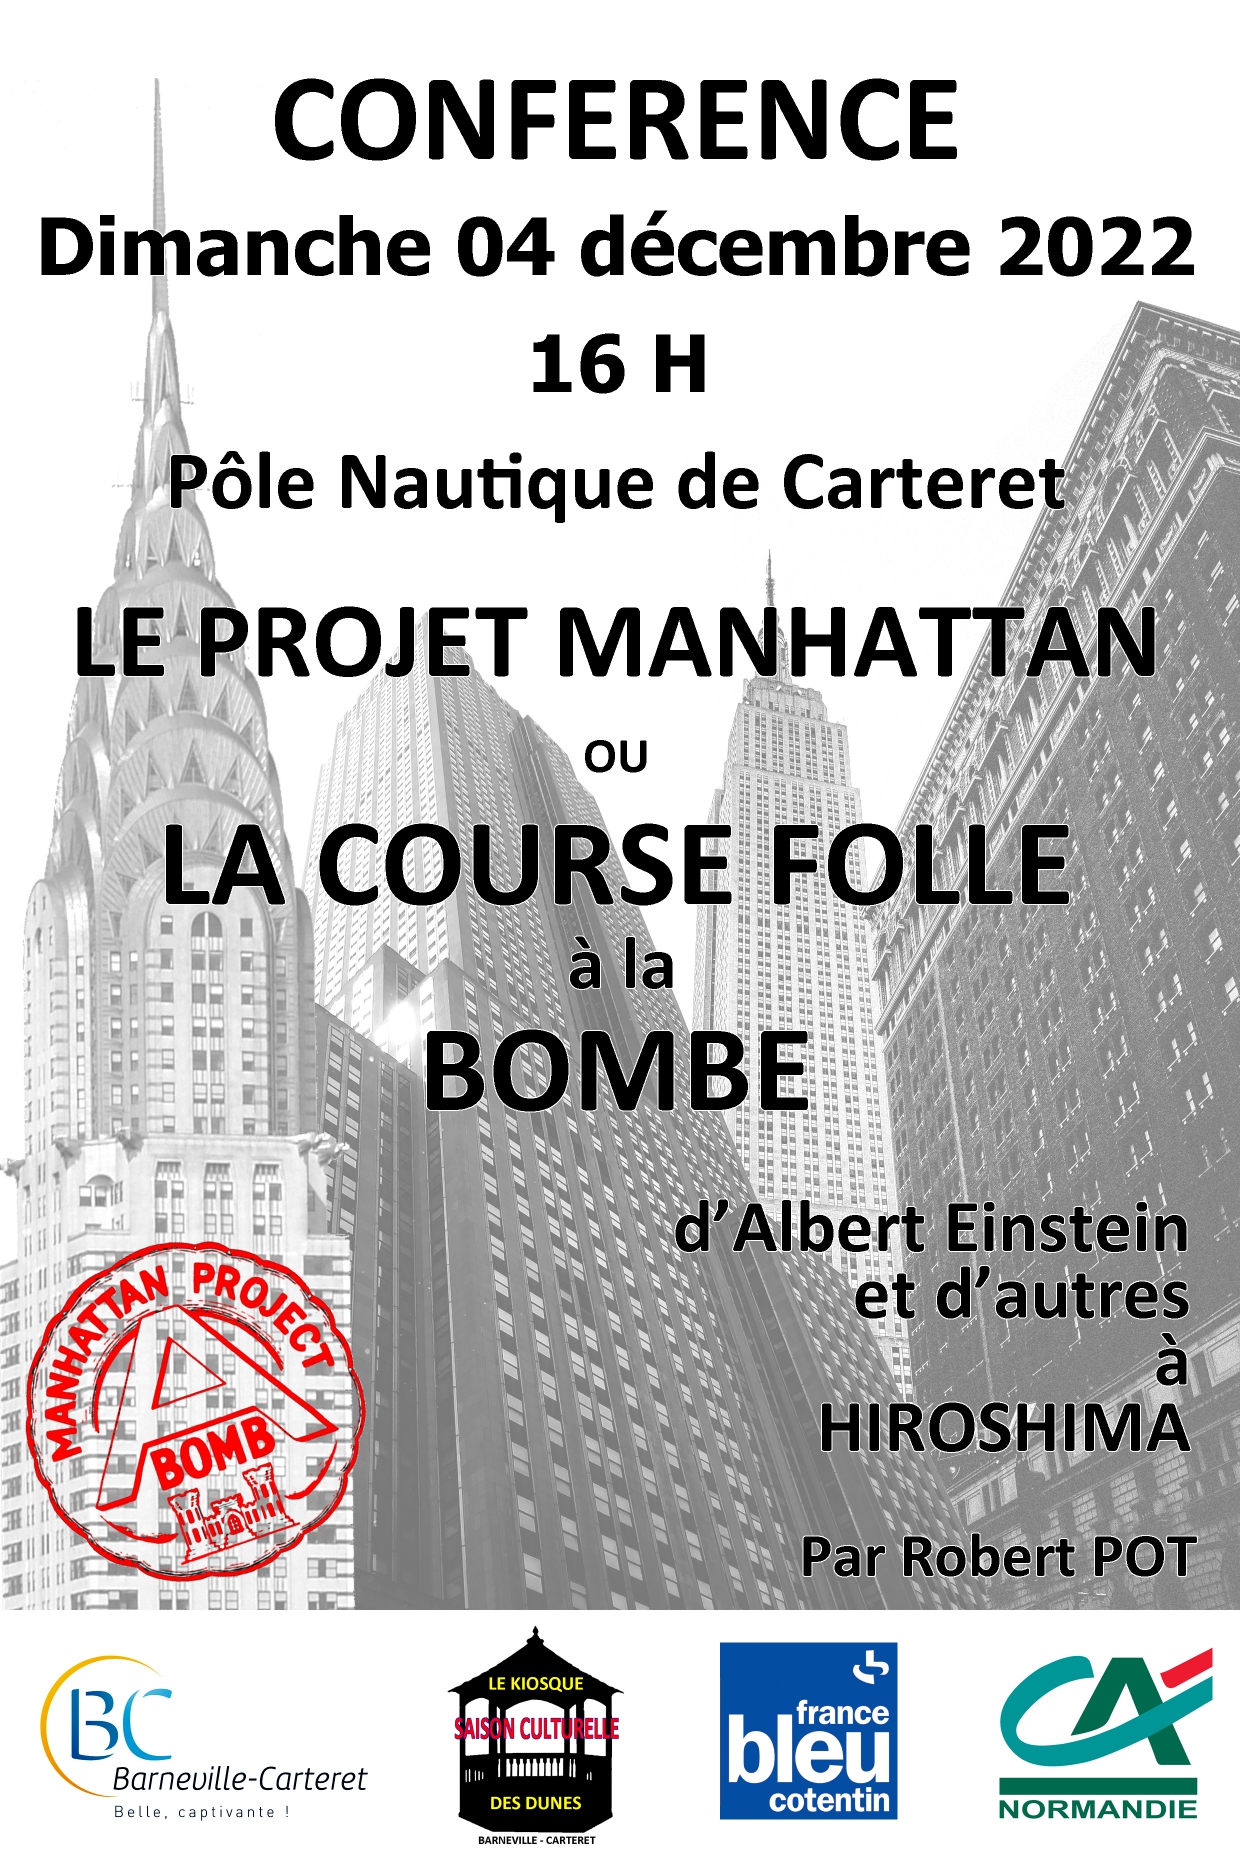 CONFERENCE : Le Projet Manhattan ou La Course Folle à la Bombe d'Albert Einstein et d'autres à HIROSHIMA